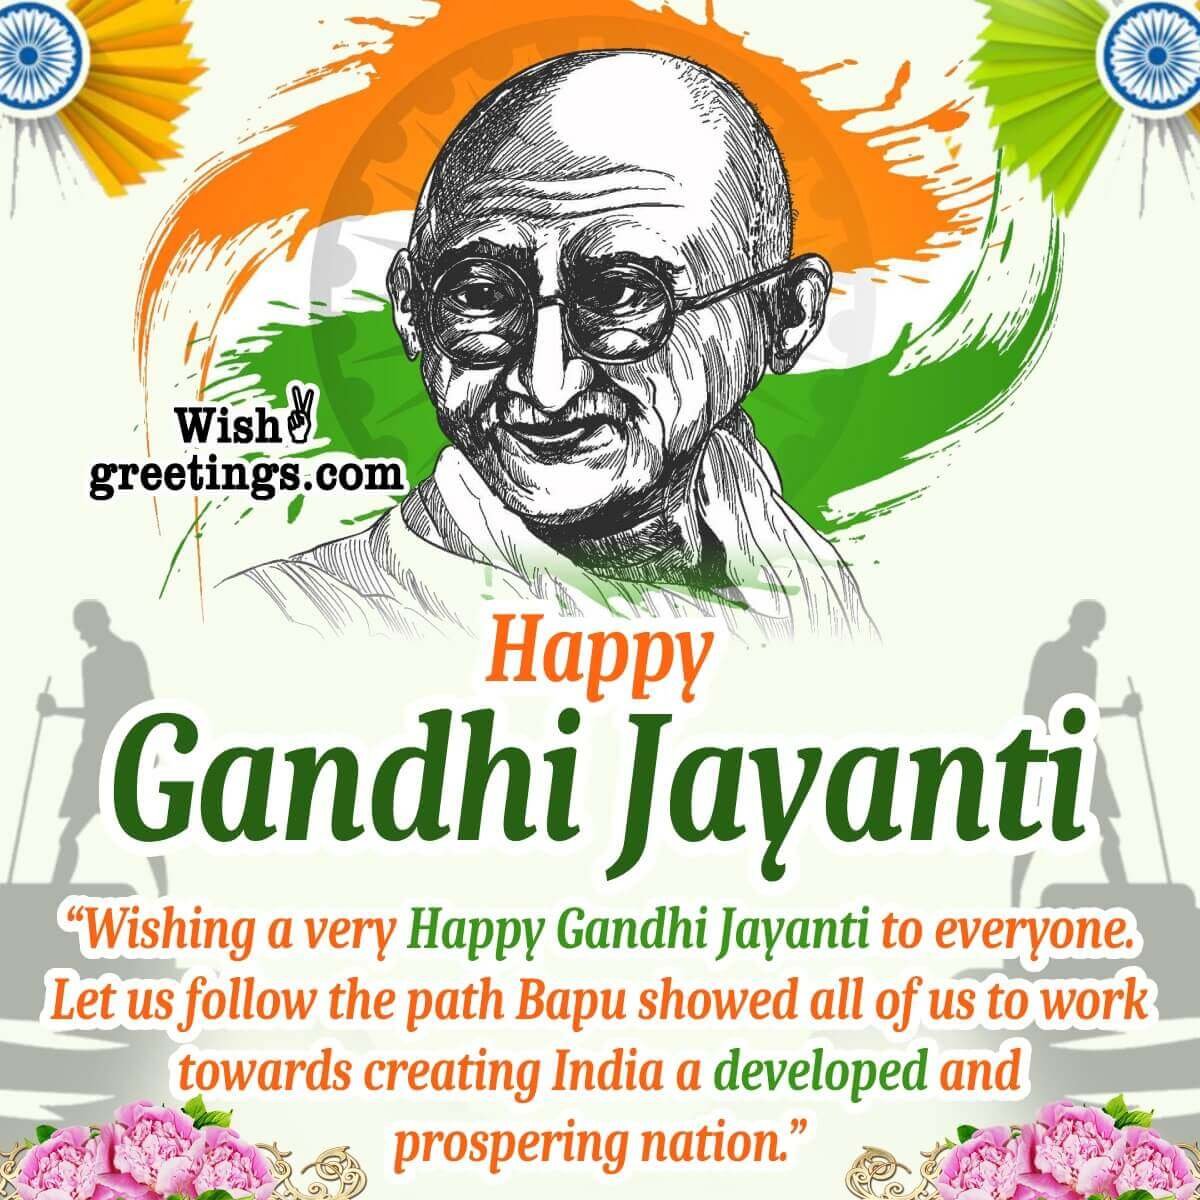 Gandhi Jayanti Greeting Image